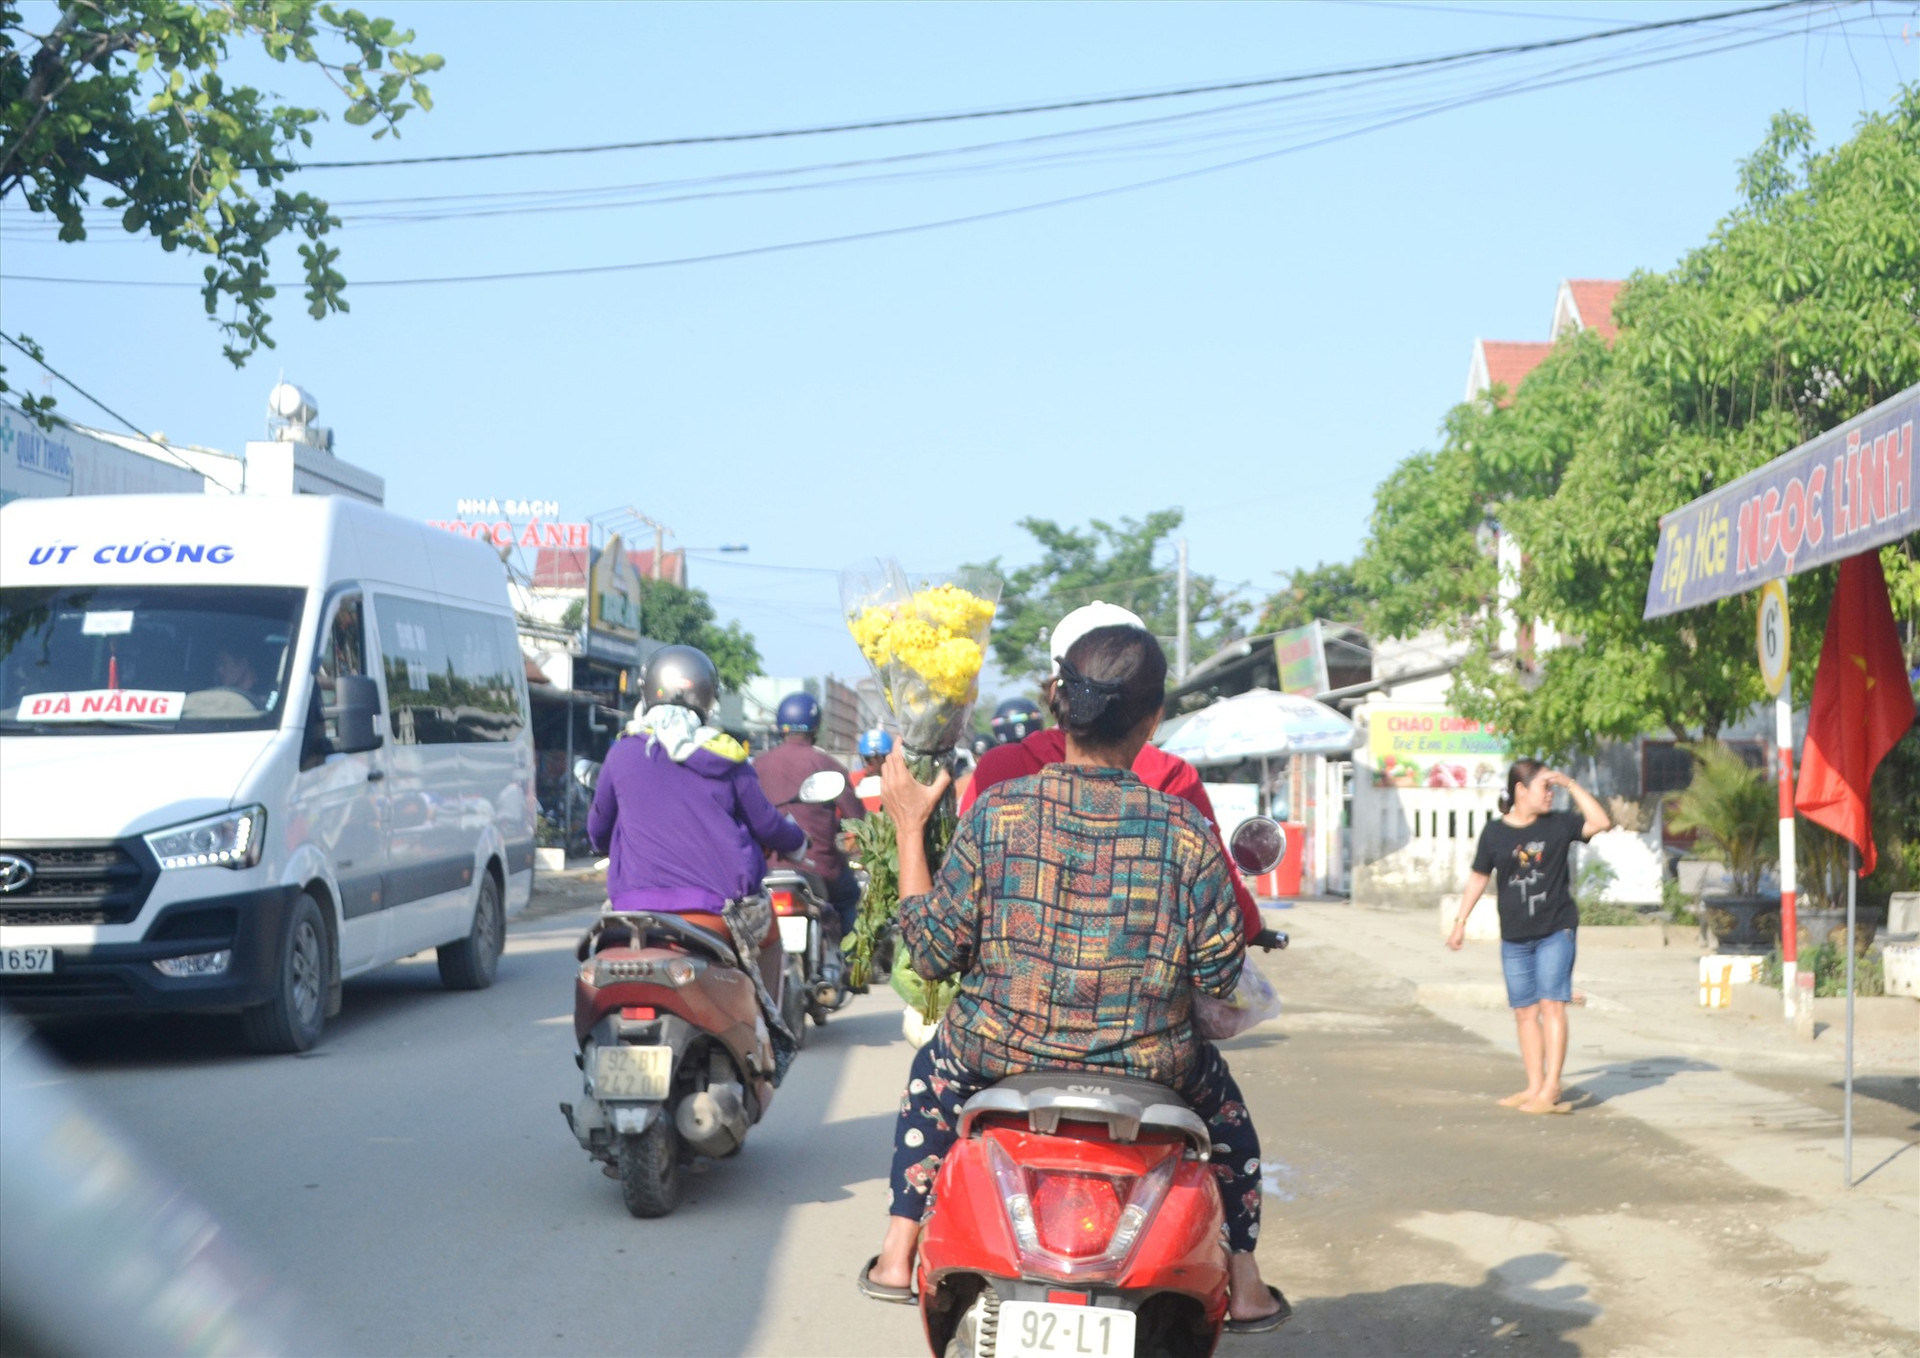 Quốc lộ 40B qua Phú Ninh đông đúc người đi lại dễ xảy ra va chạm, nhưng 2 người phụ nữ này không đội mũ bảo hiểm. Ảnh: C.T